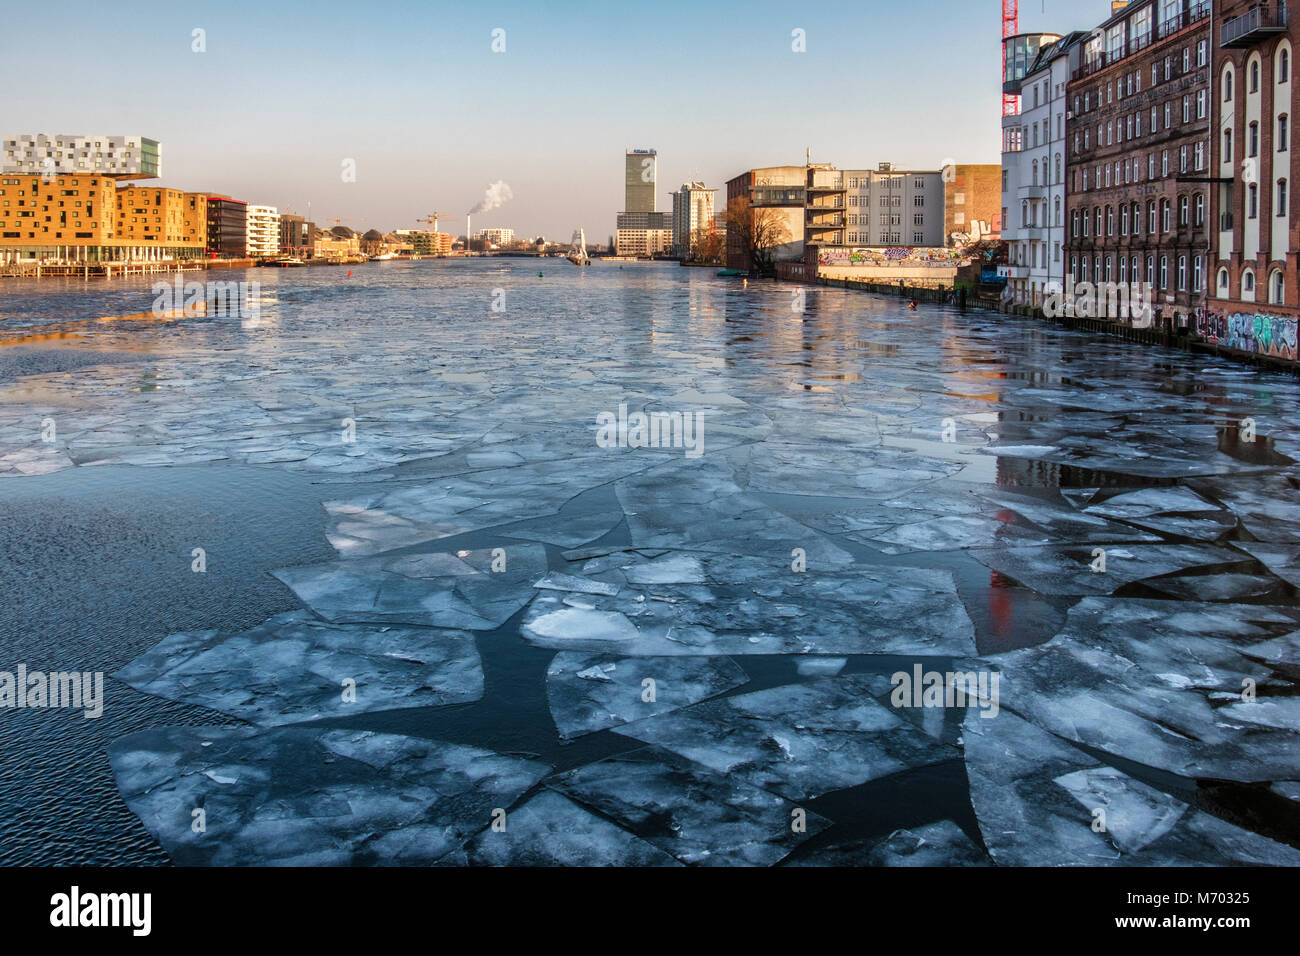 Deutschland, Berlin, Spree friert wie Temperaturen unter Null Ursache Eisschollen auf dem Fluss Flußufer Gebäude & tiefgefrorenen Eisschollen zu sammeln Stockfoto